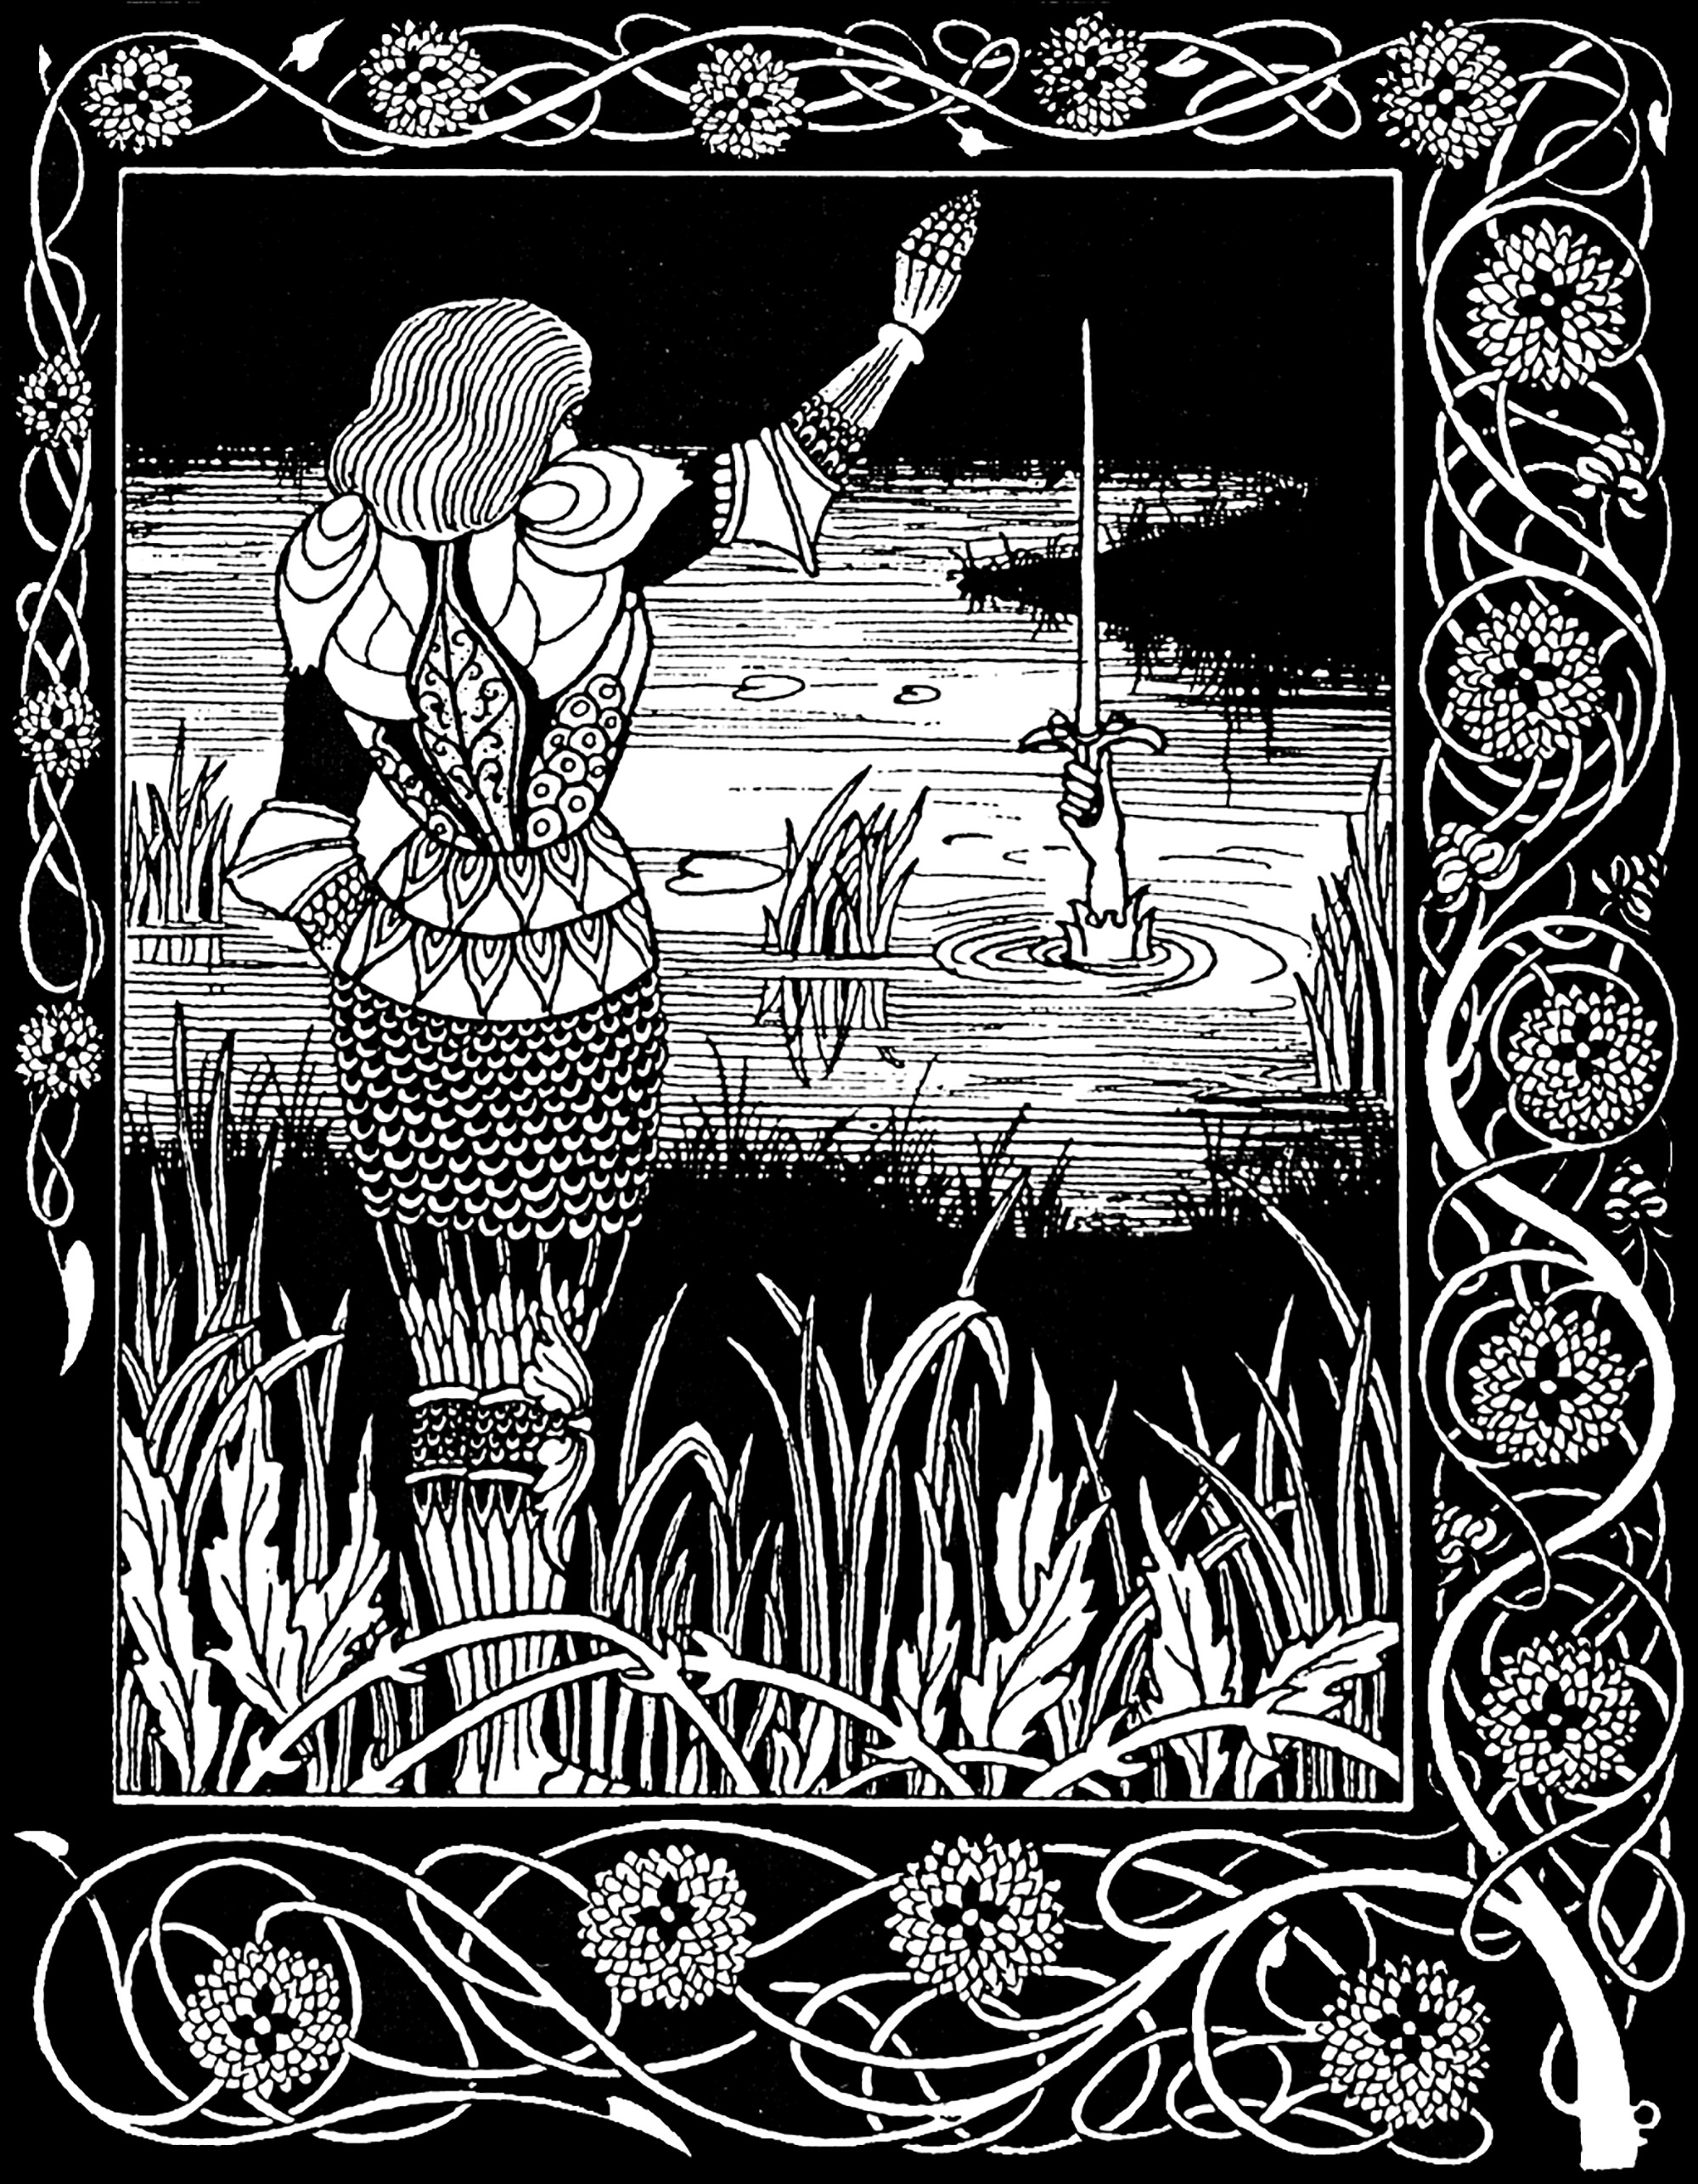 Sir Bedivere jettant Excalibur, l'épée d'Arthur, dans le lac d'où elle provenait. llustration d'Aubrey Beardsley (1872-1898) pour une édition de La Mort d'Arthur de Sir Thomas Malory (1893)